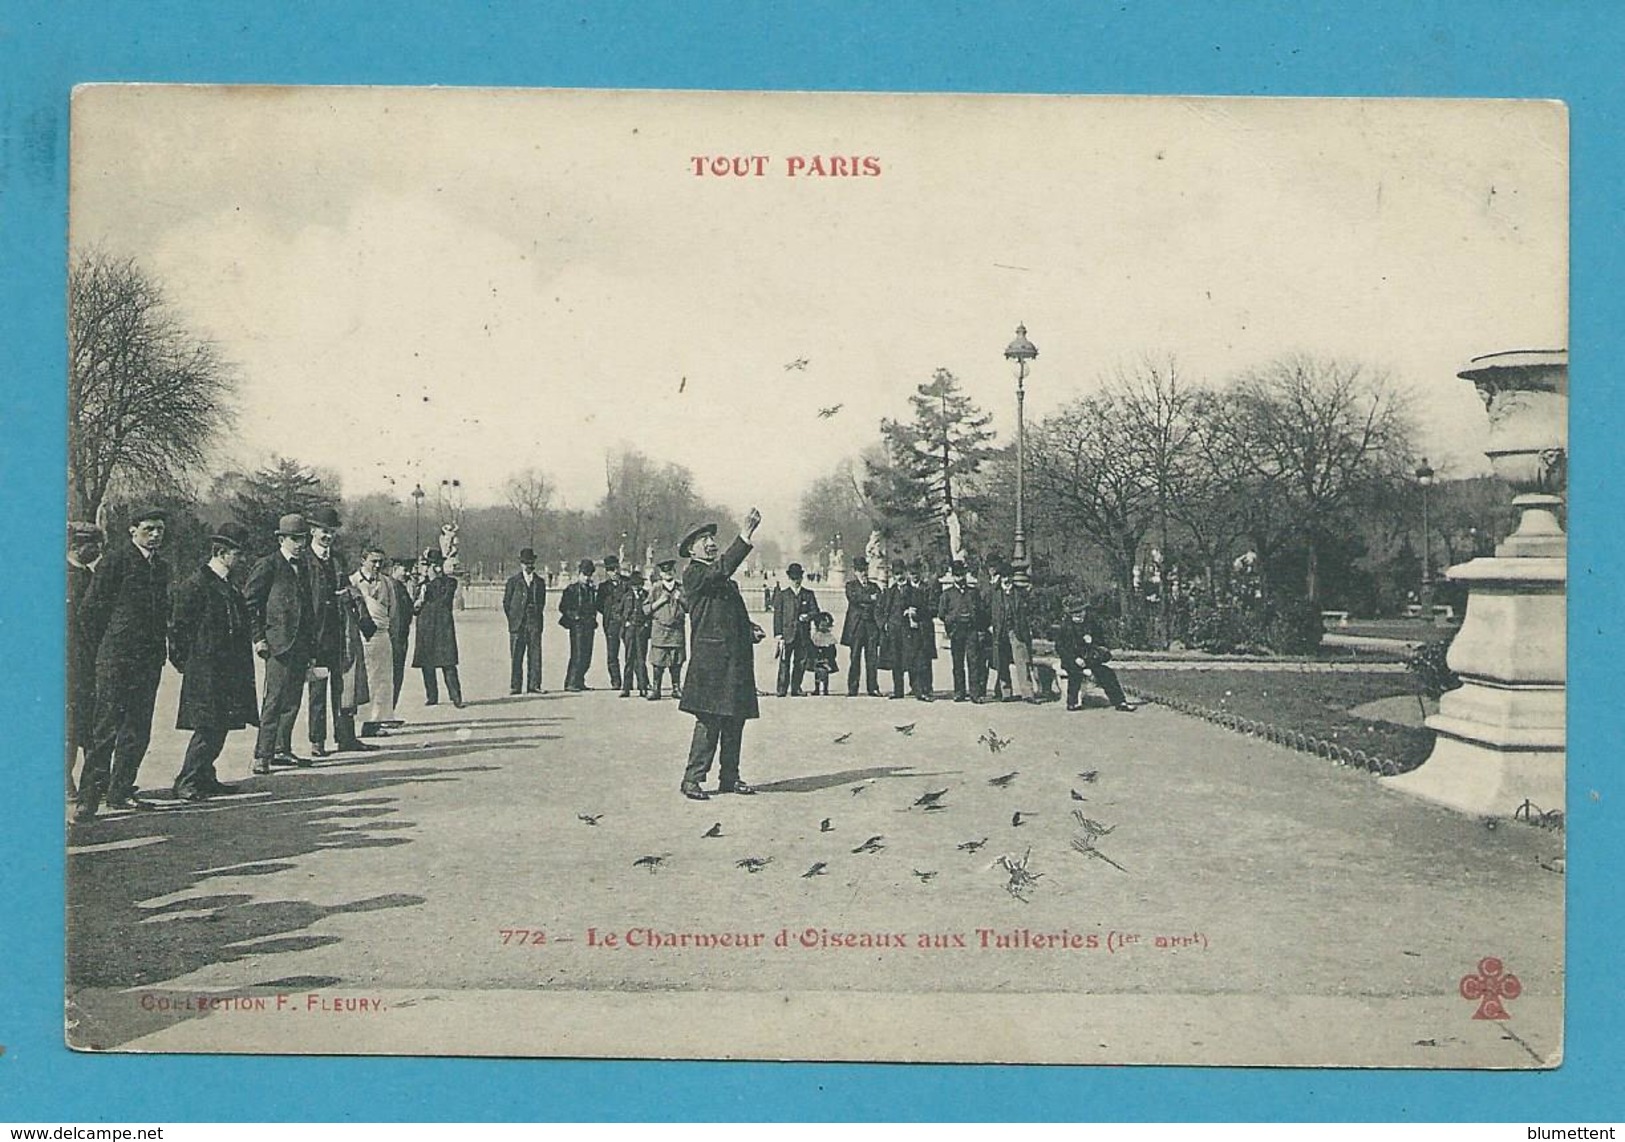 CPA TOUT PARIS 772 - Le Charmeur D'oiseaux Aux Tuileries (1er Arrt.) Edition FLEURY - Distrito: 01